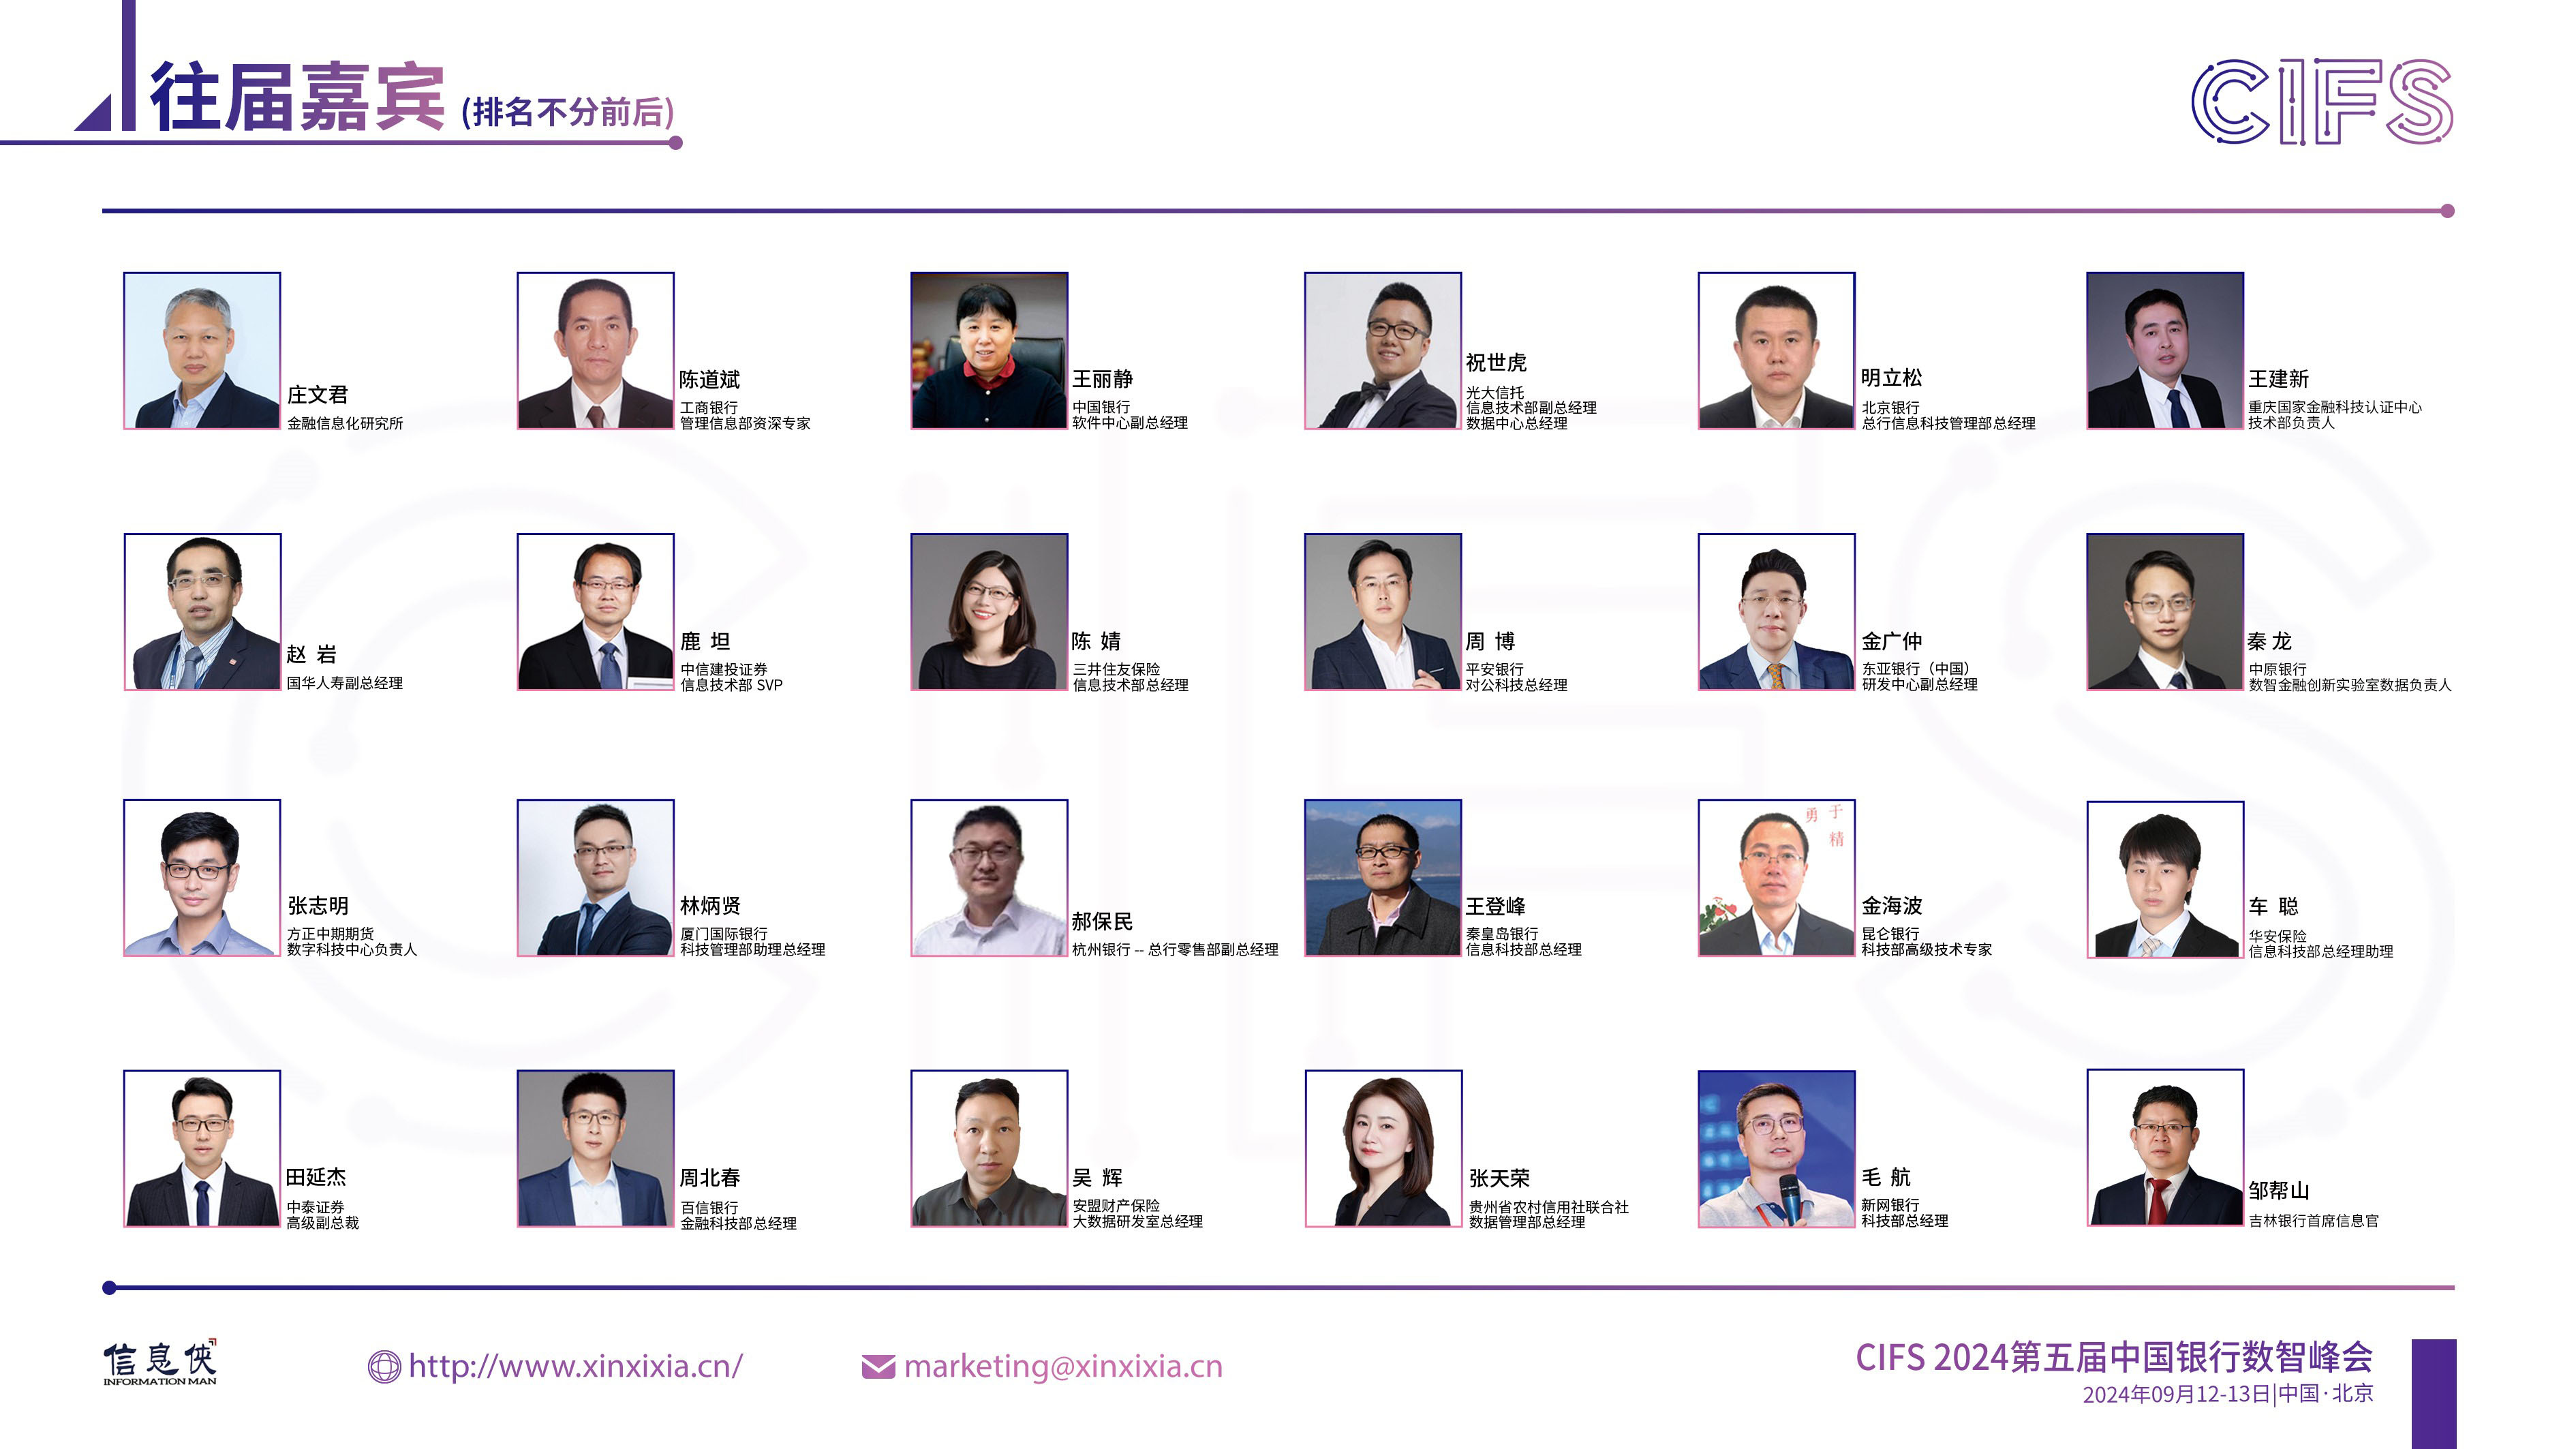 CIFS 2024第五届中国银行数智峰会